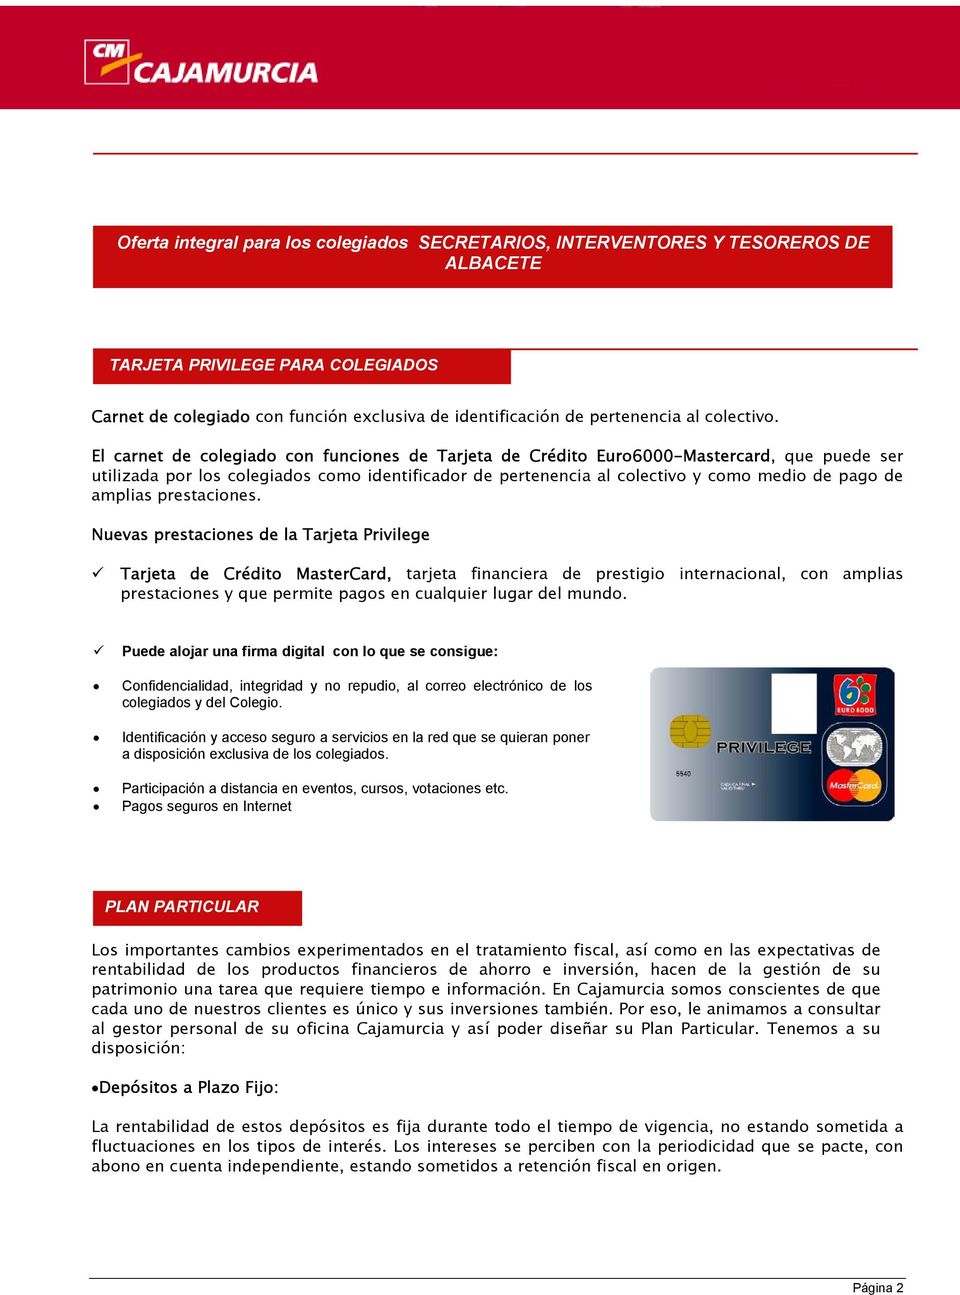 El carnet de colegiado con funciones de Tarjeta de Crédito Euro6000-Mastercard, que puede ser utilizada por los colegiados como identificador de pertenencia al colectivo y como medio de pago de